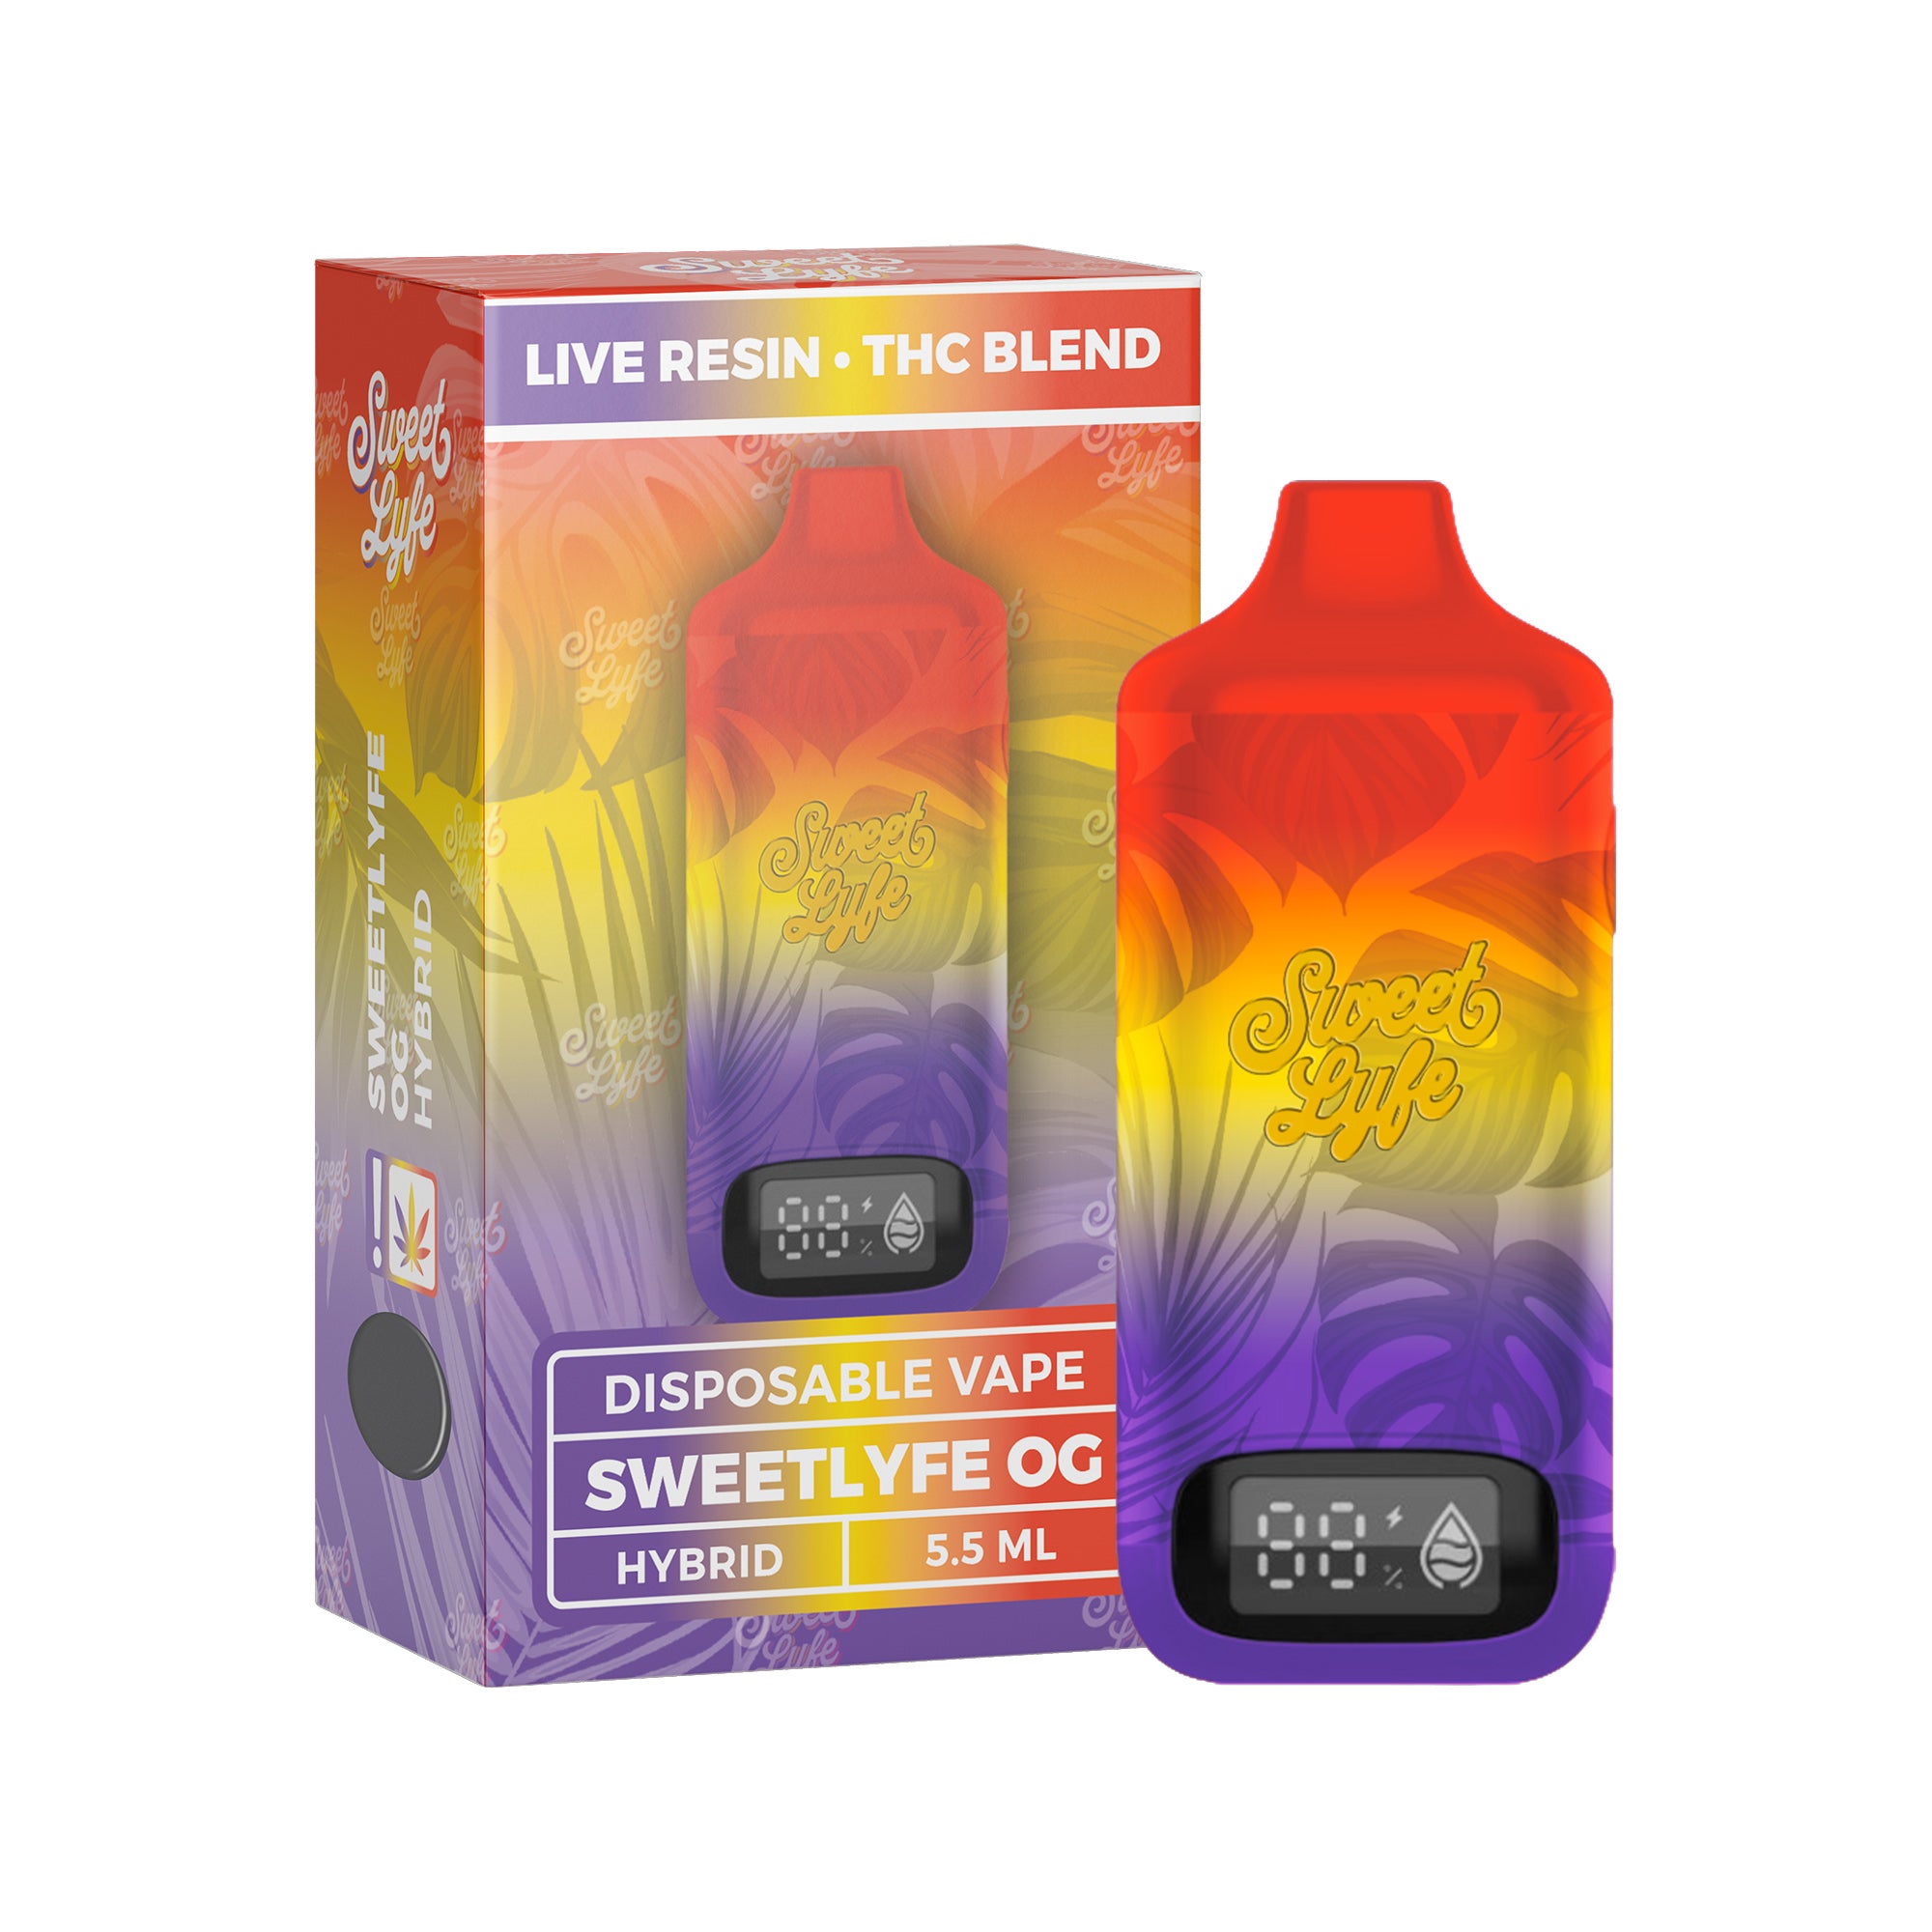 5.5ML Disposable - Live Resin • THC Blend  - SweetLyfe OG - Hybrid